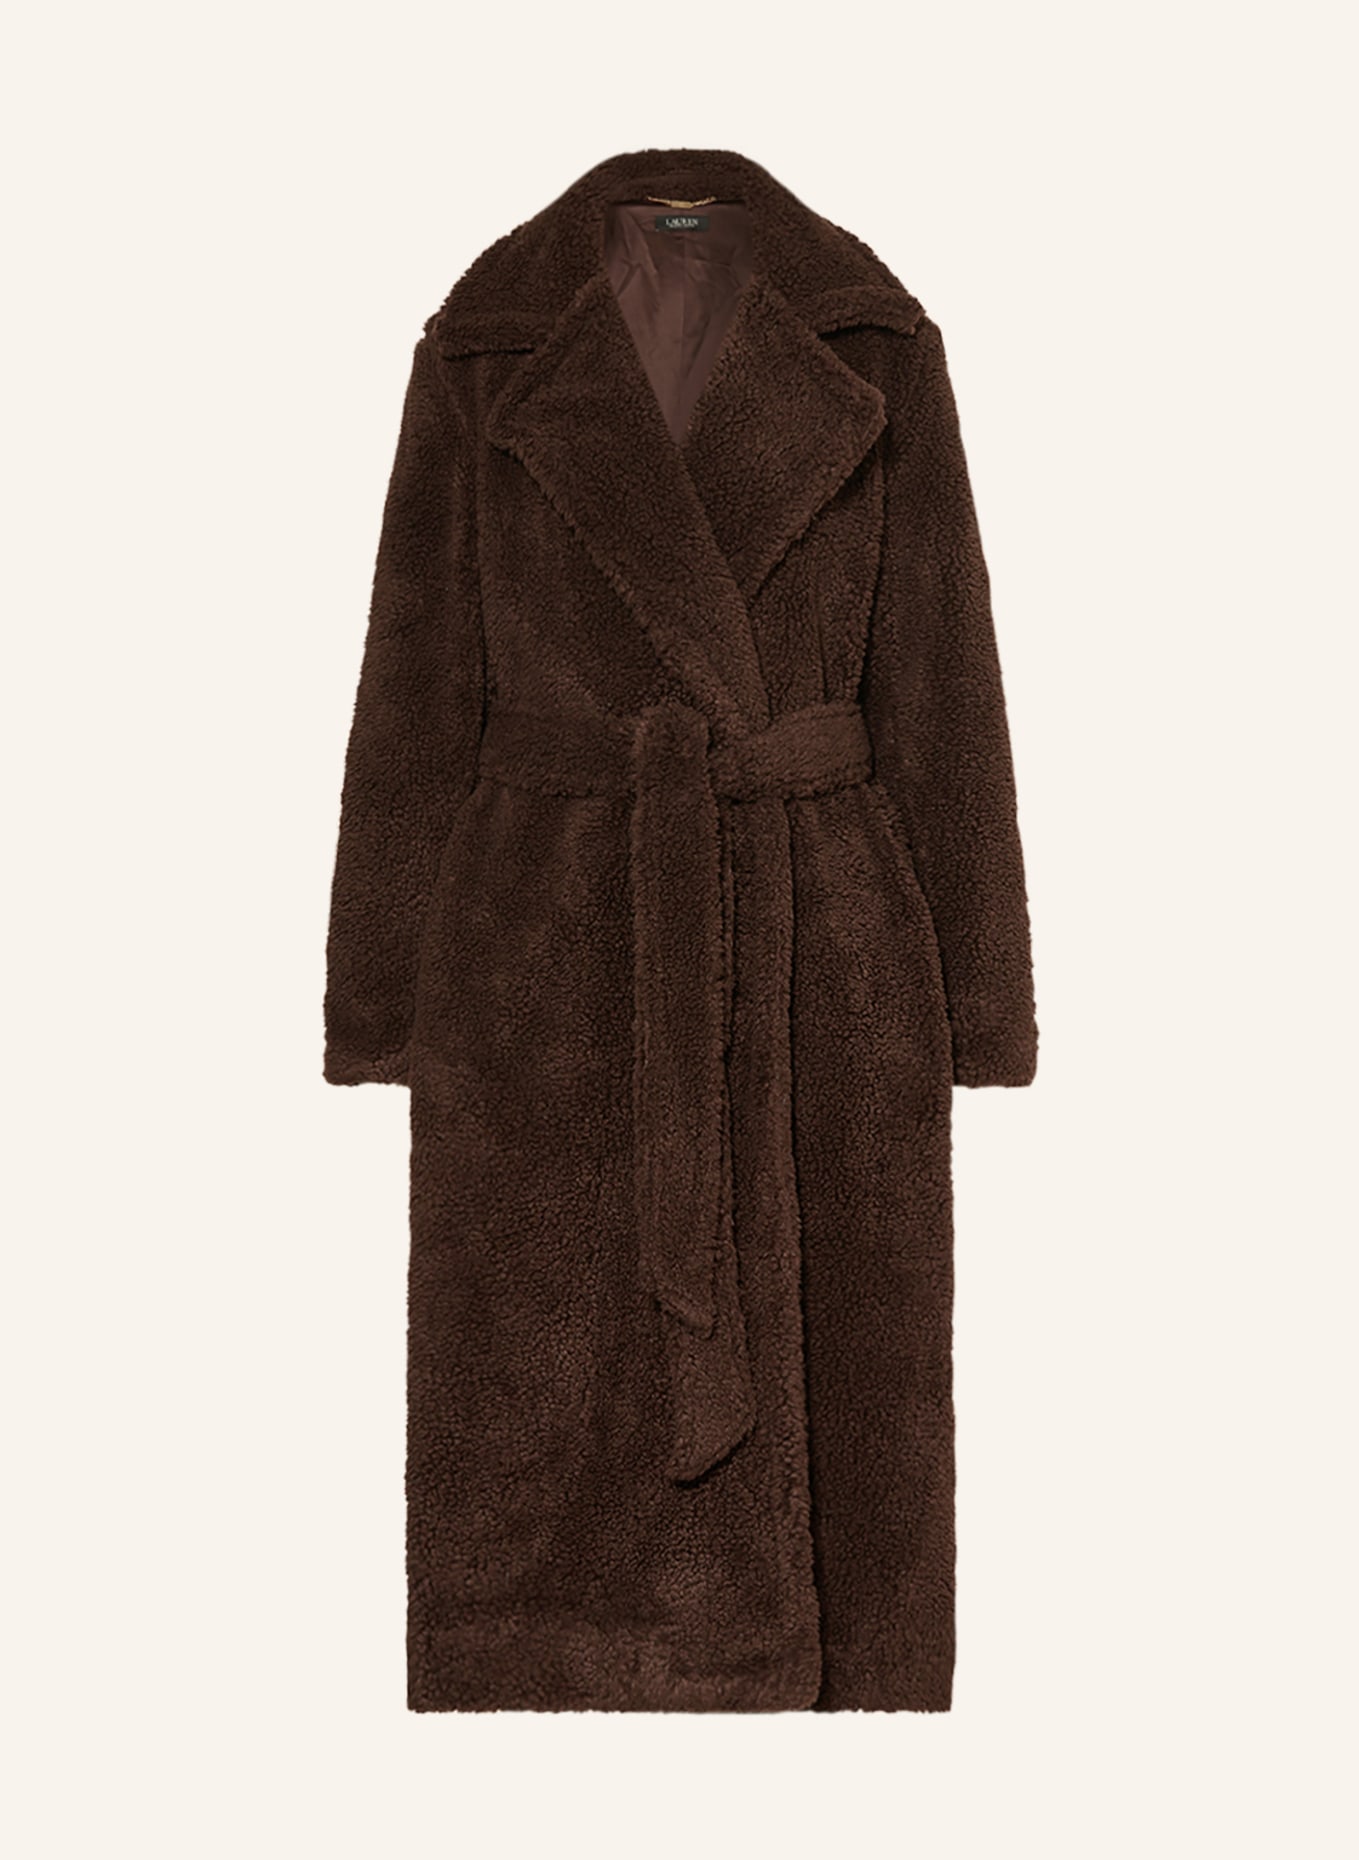 LAUREN RALPH LAUREN Teddy coat, Color: DARK BROWN (Image 1)